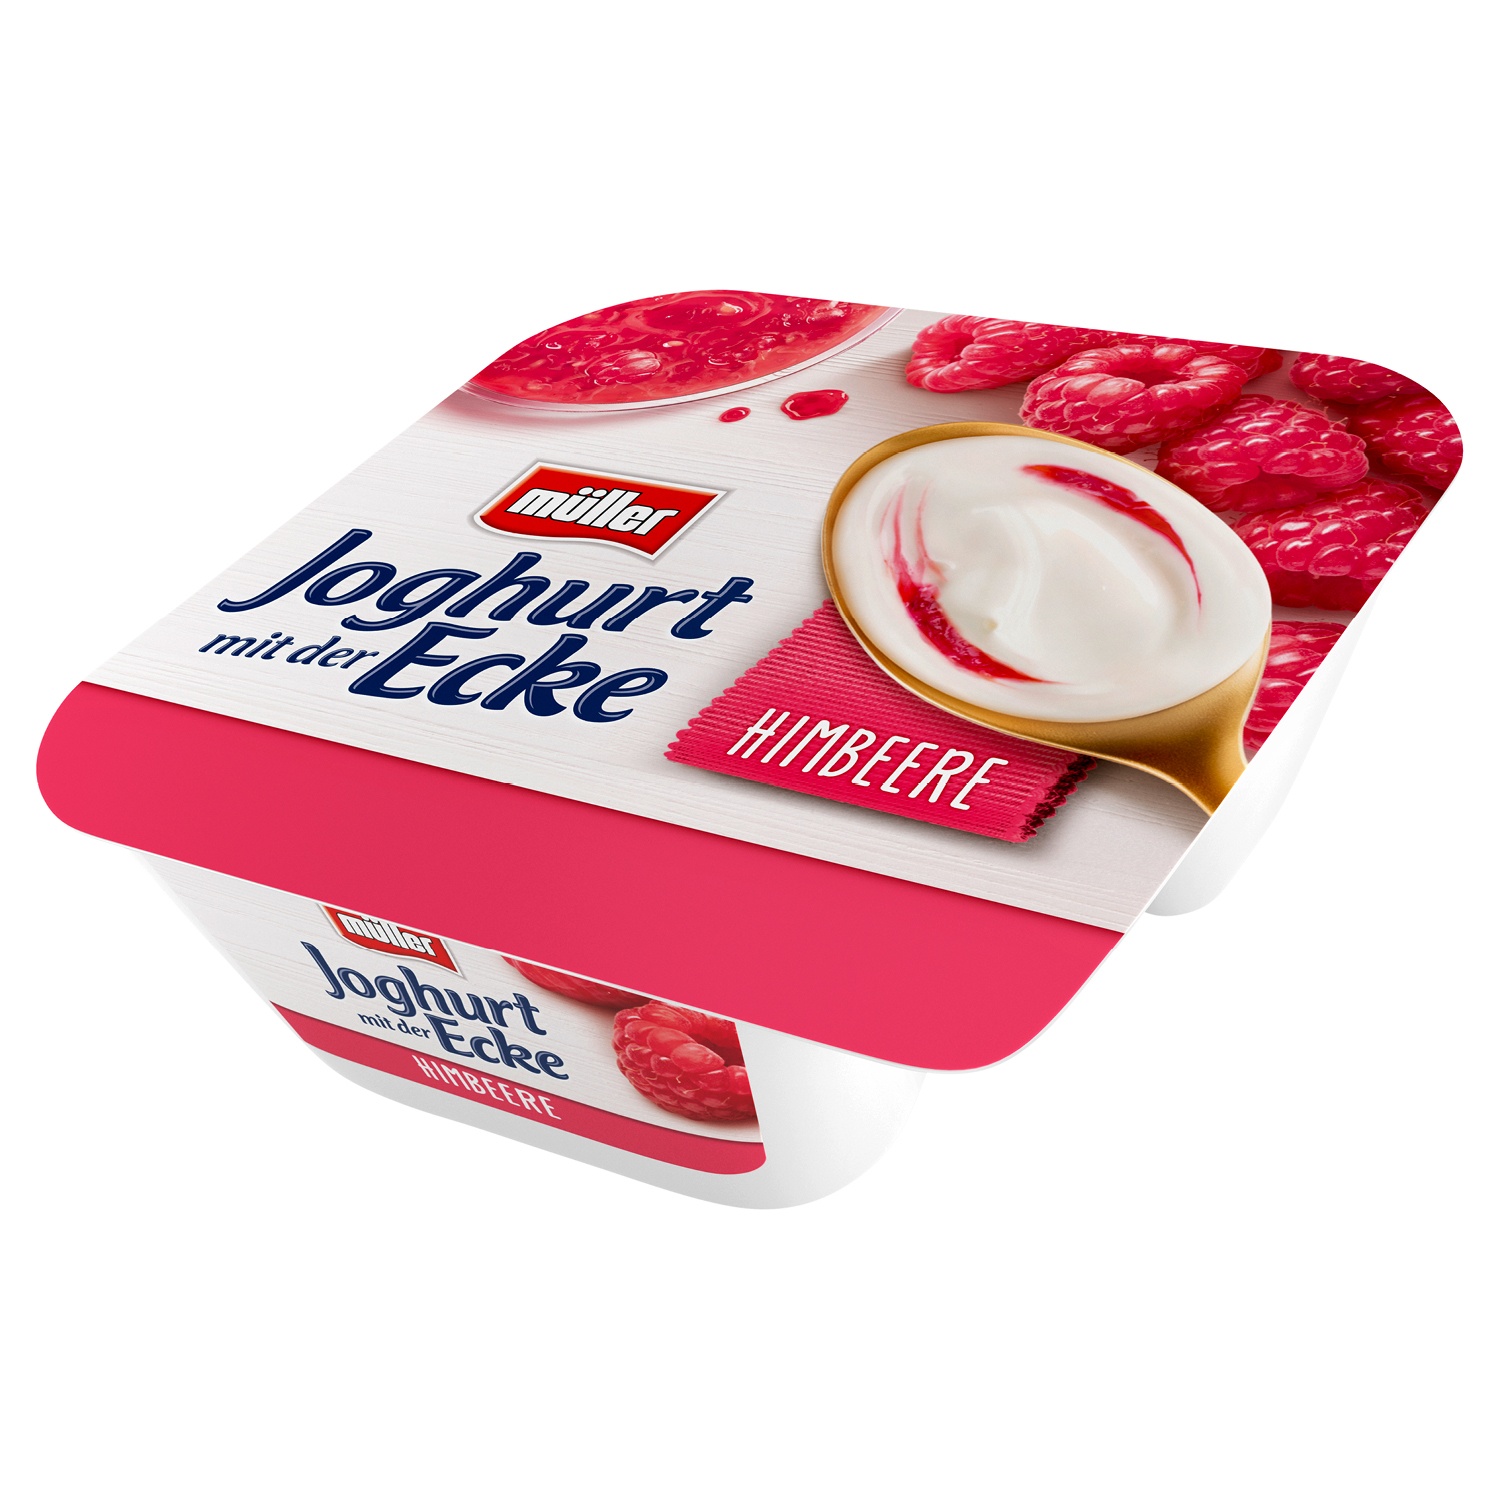 müller® Joghurt mit der Ecke 150 g